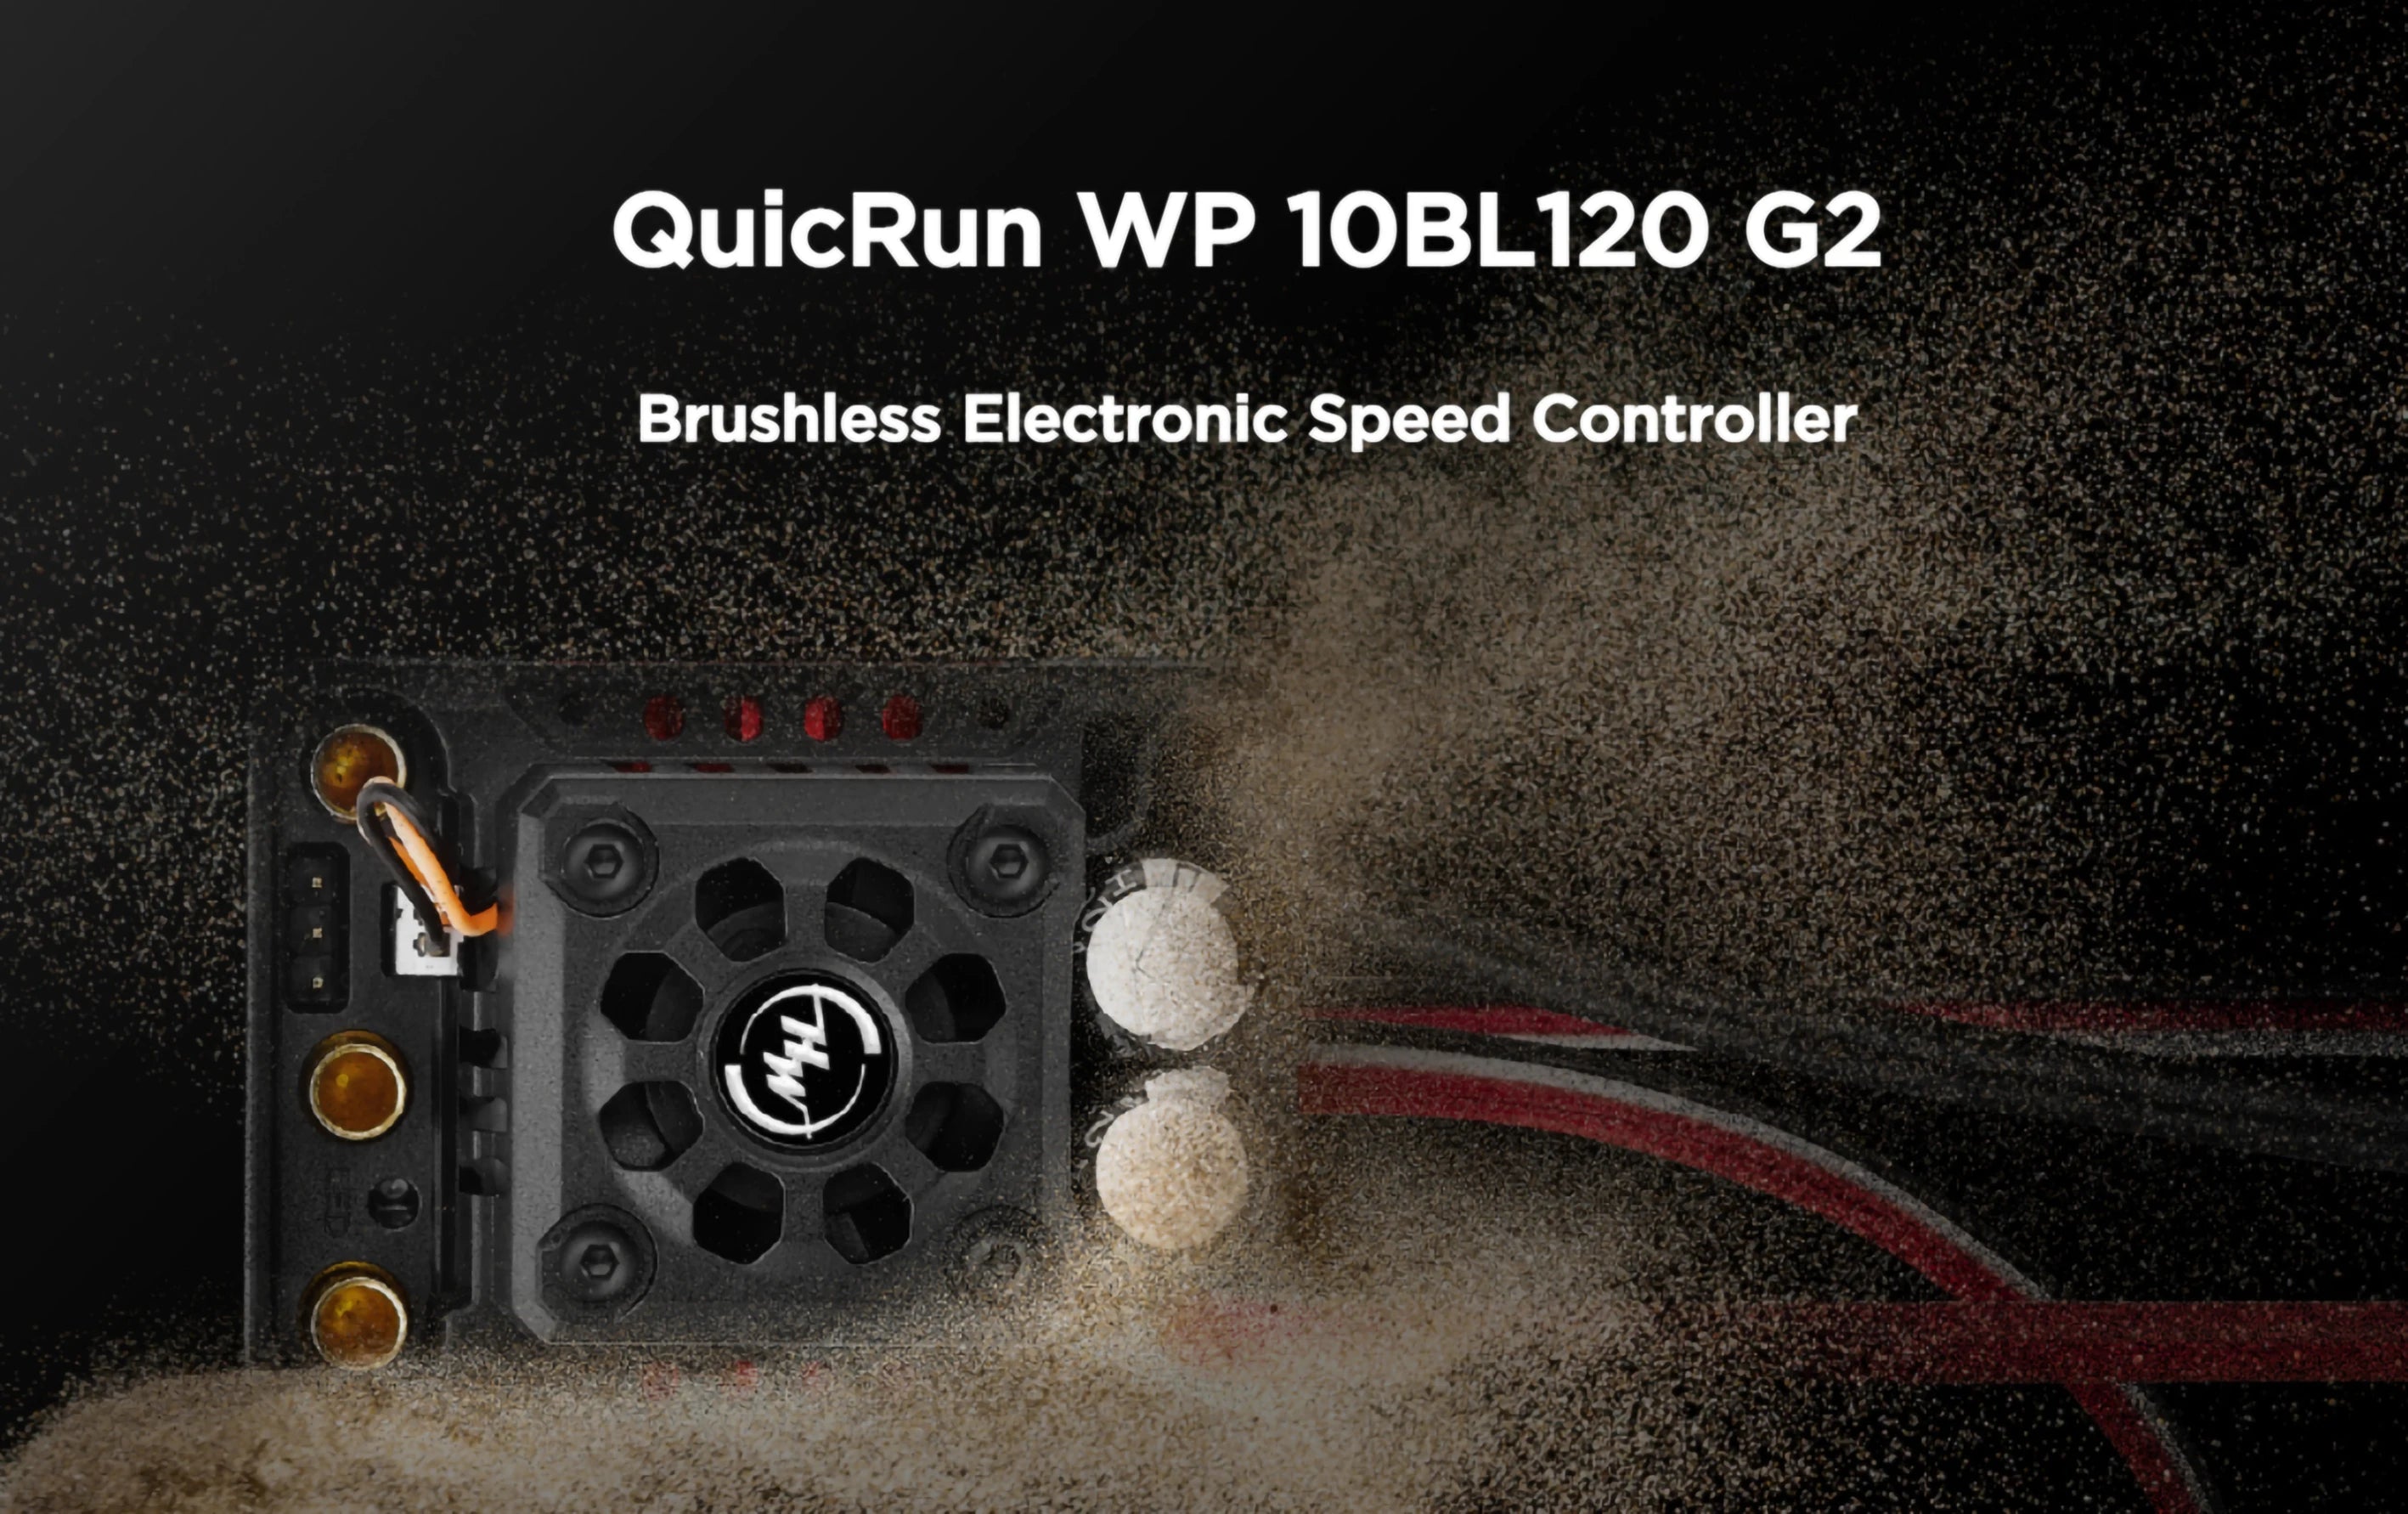 QuicRun WP 1OBLI2O G2 Brushless Electronic Speed